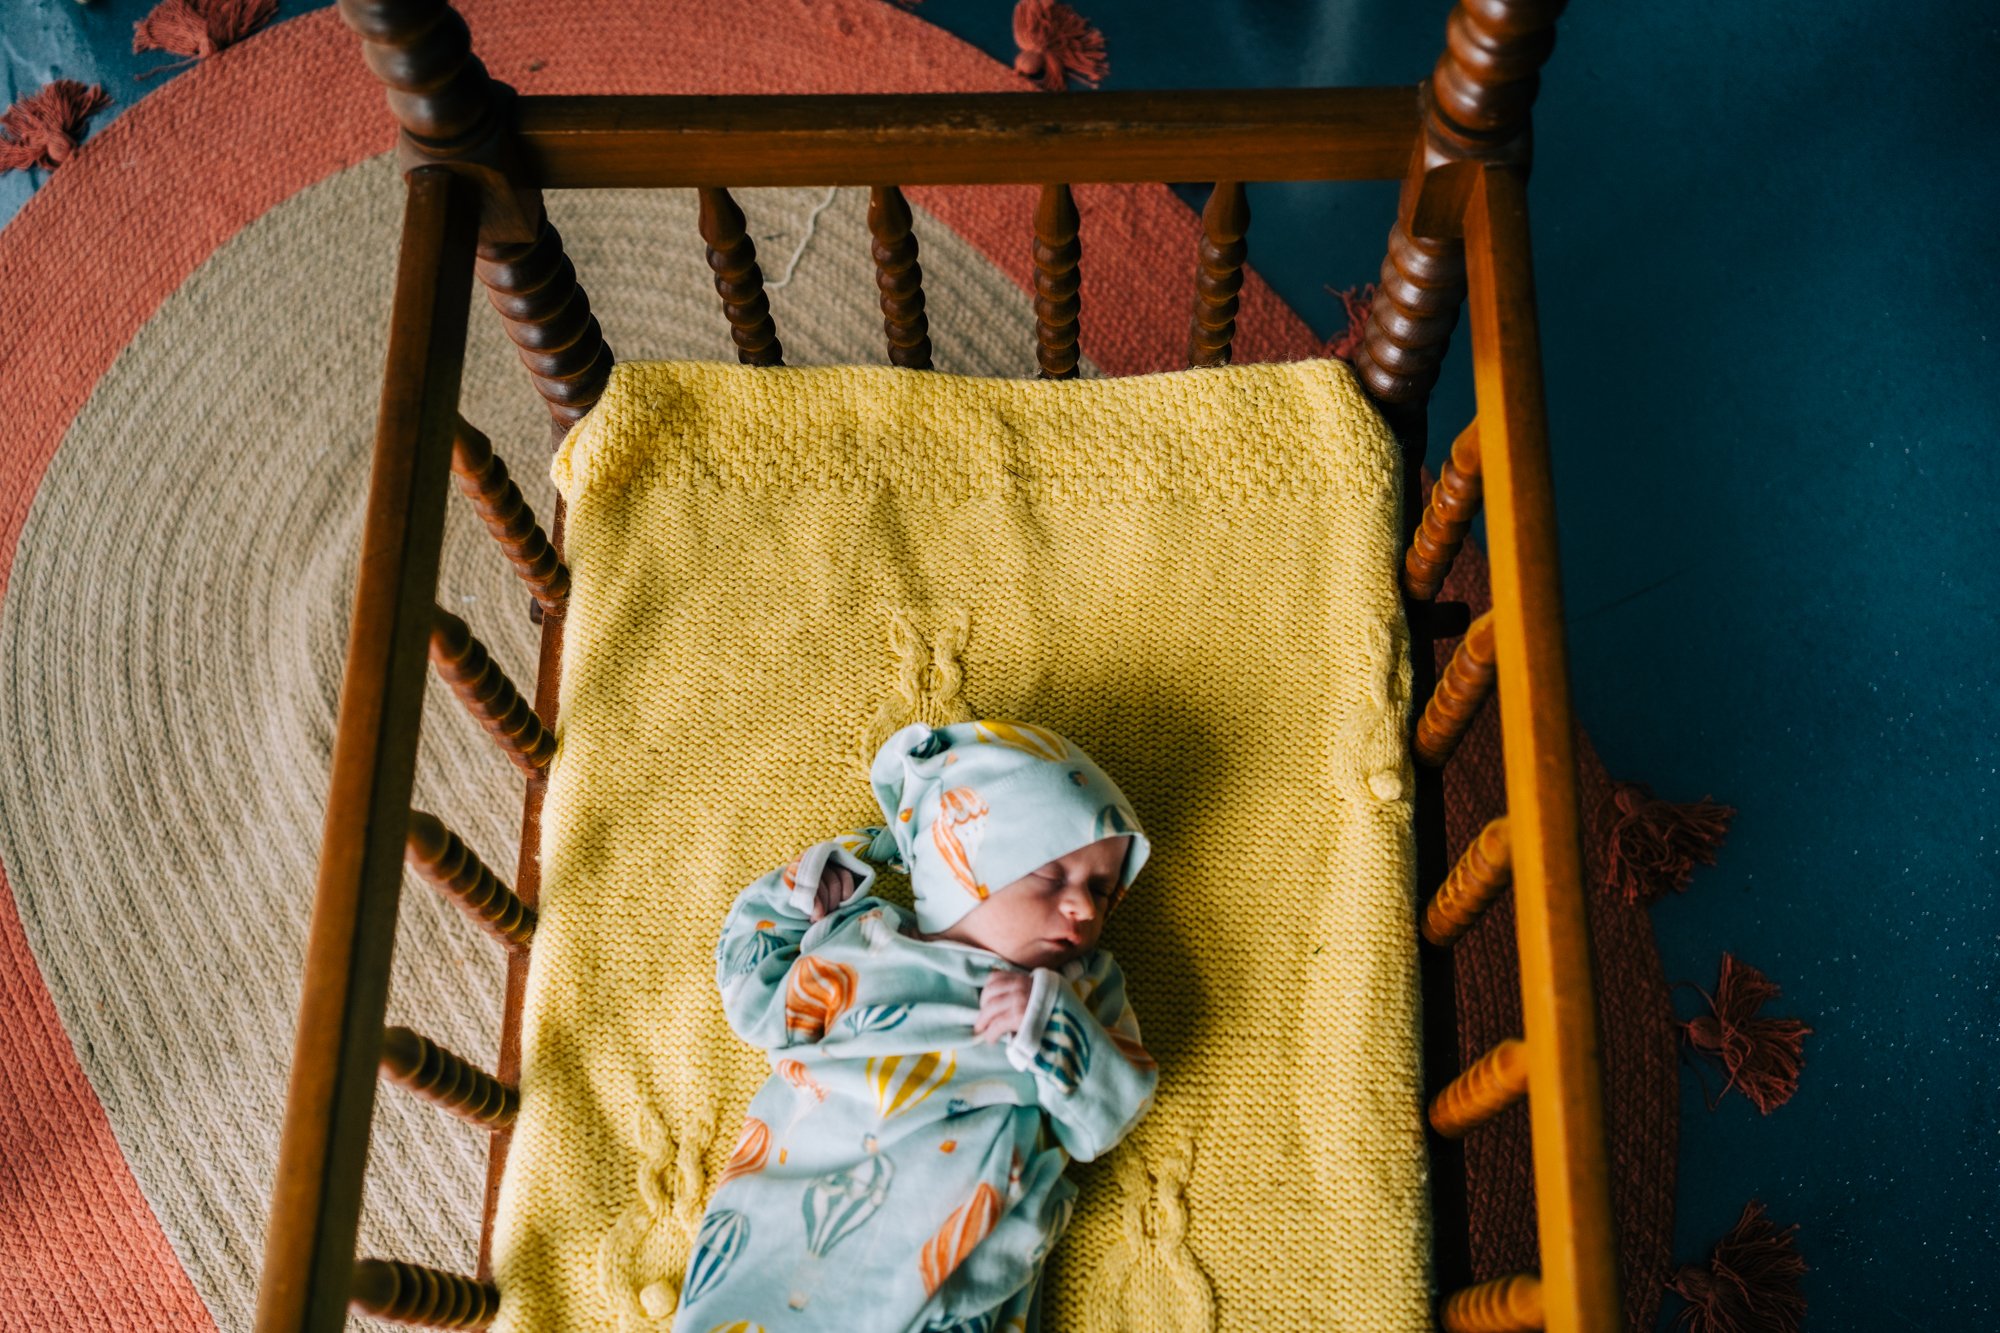 denver-newborn-photographer-jessica-dory-07370.jpg